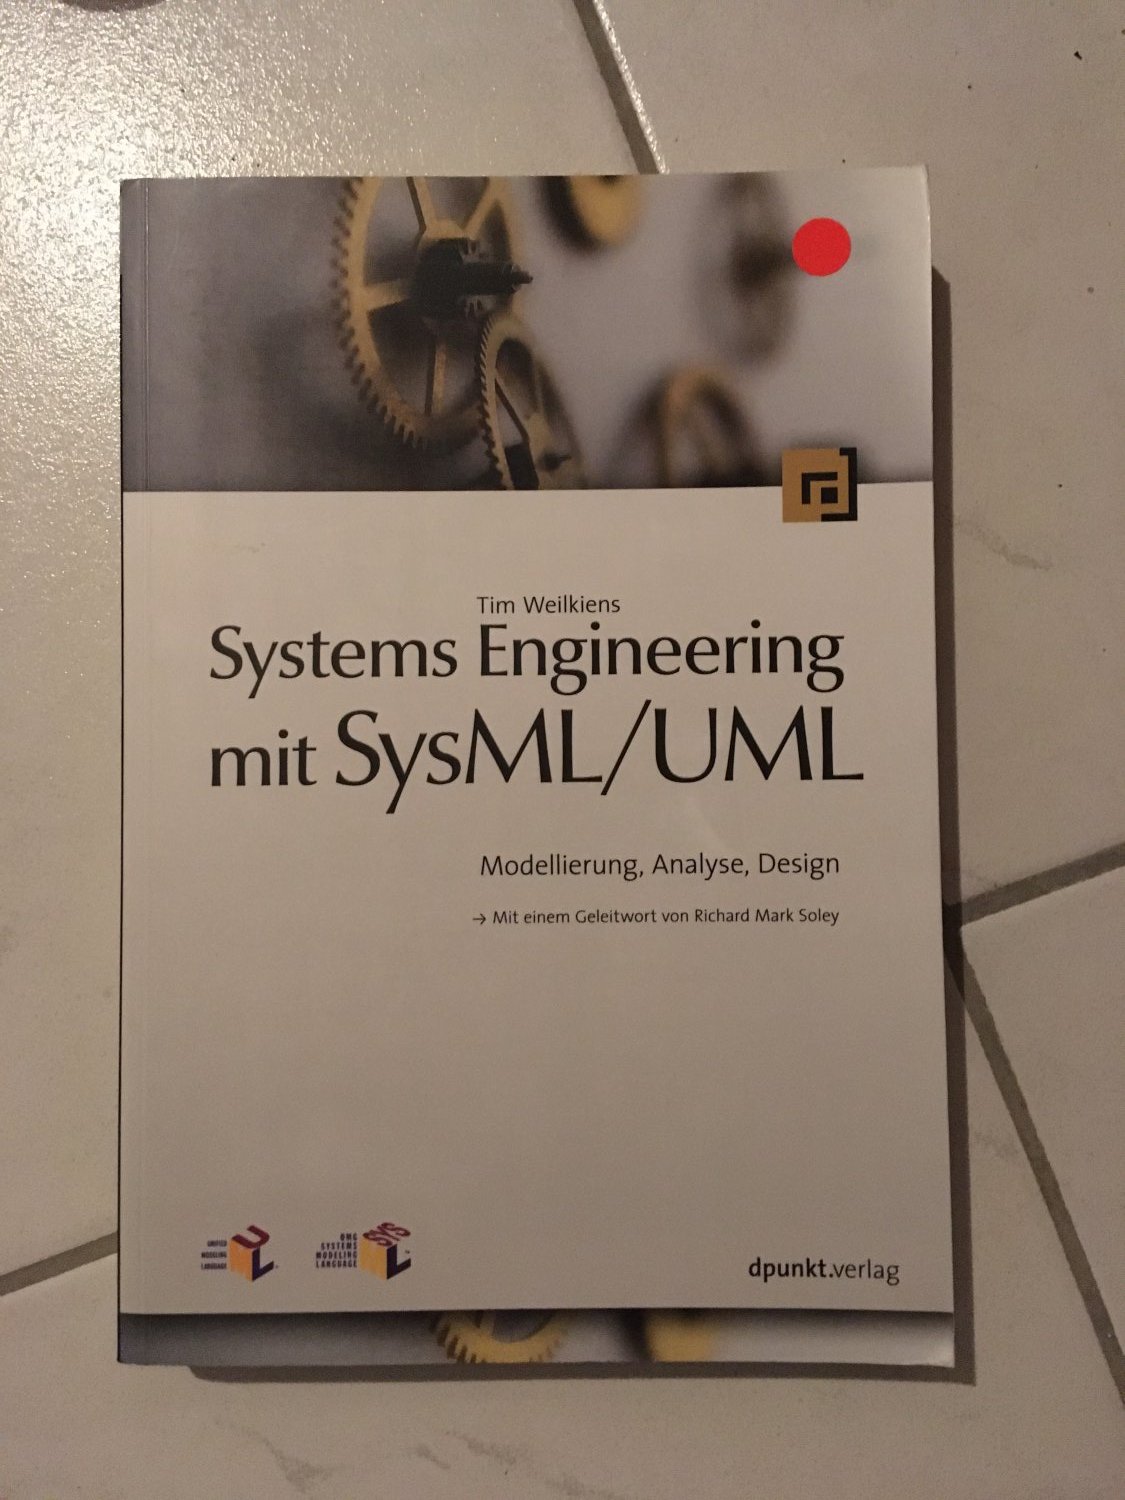 Systems Engineering mit SysML /UML“ Weilkiens) – Buch gebraucht kaufen –